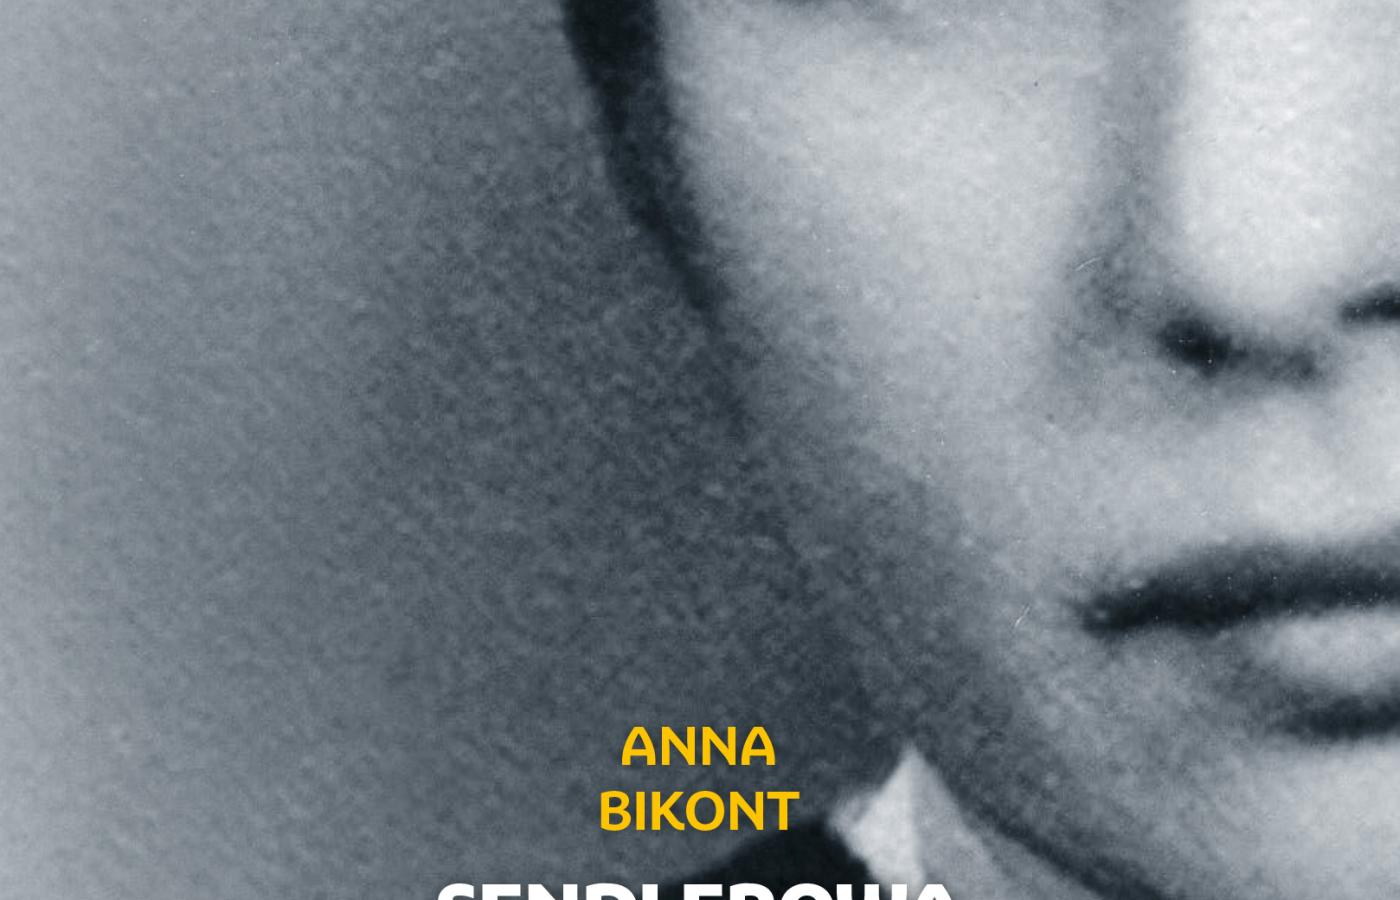 Okładka książki „Sendlerowa. W ukryciu” Anny Bikont.